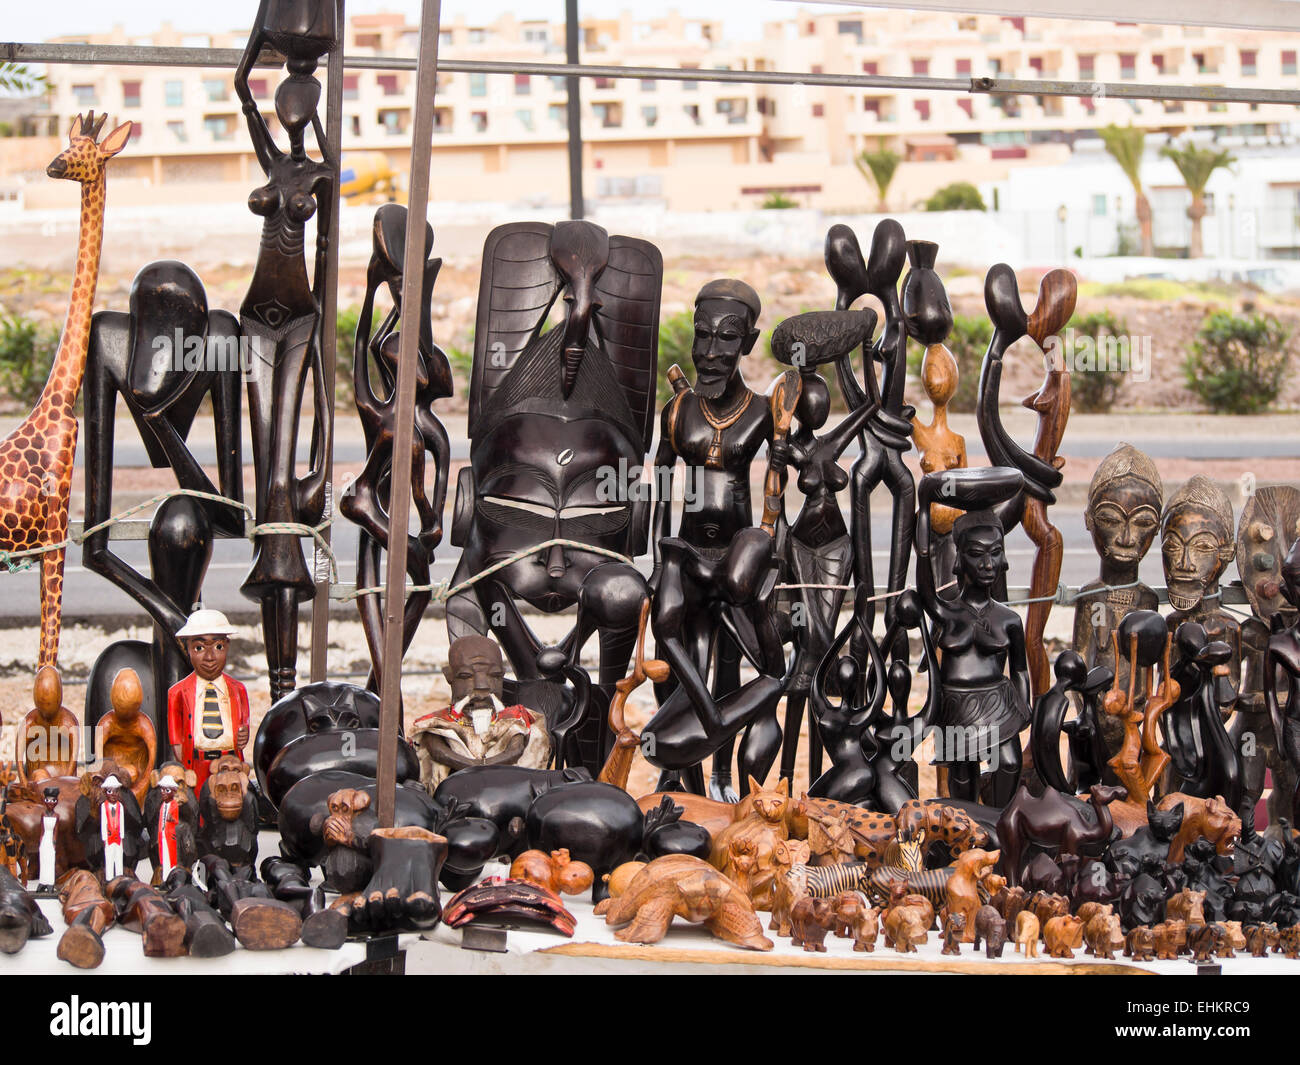 Legno intagliato figurine africano, mai popolare nei mercatini delle isole Canarie, qui uno stallo in Corralejo Fuerteventura Foto Stock